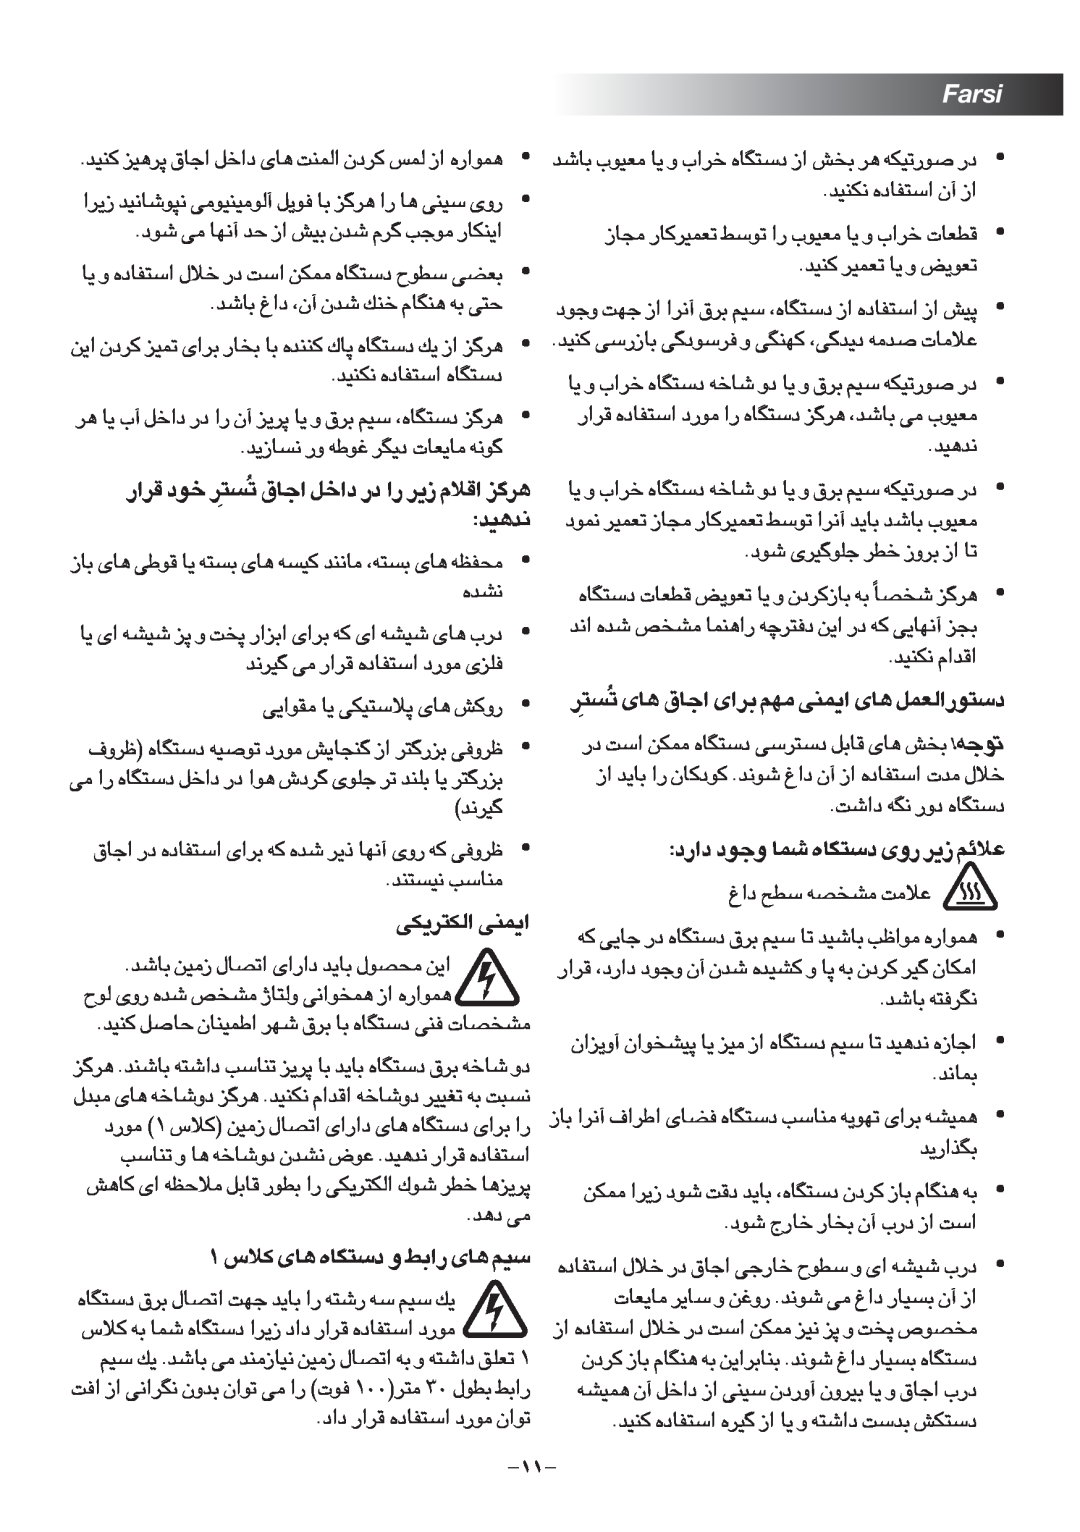 Black & Decker TRO1000 manual Farsi, ⁄œ« ßD` ±AªBt ´ö±X 